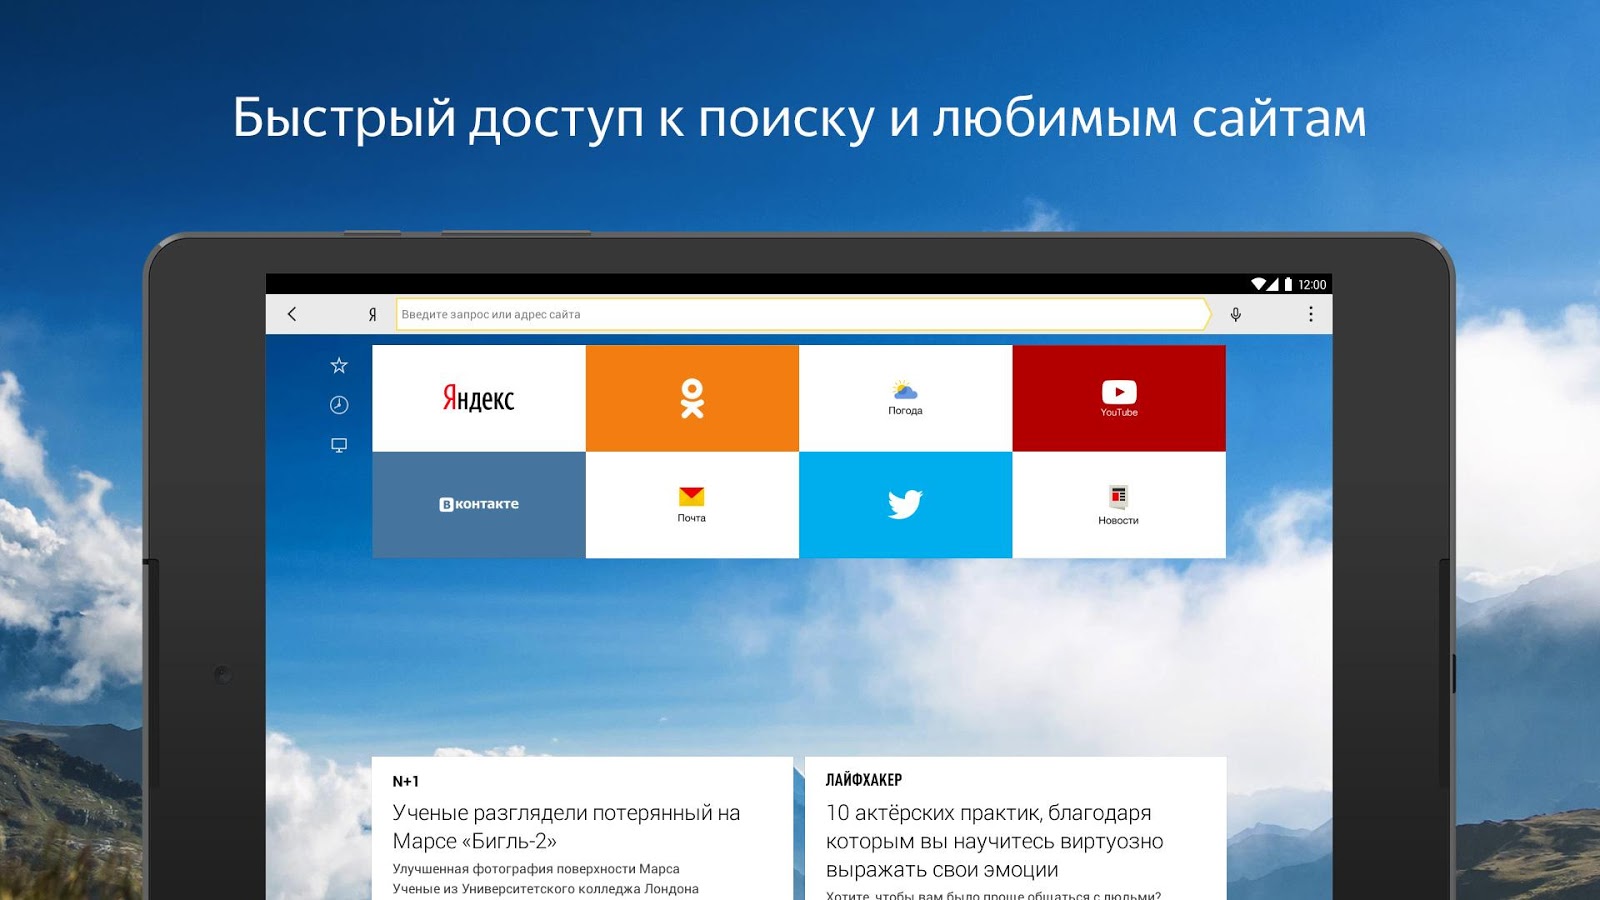 Скачать Яндекс Браузер 23.11.5.98 Для Android